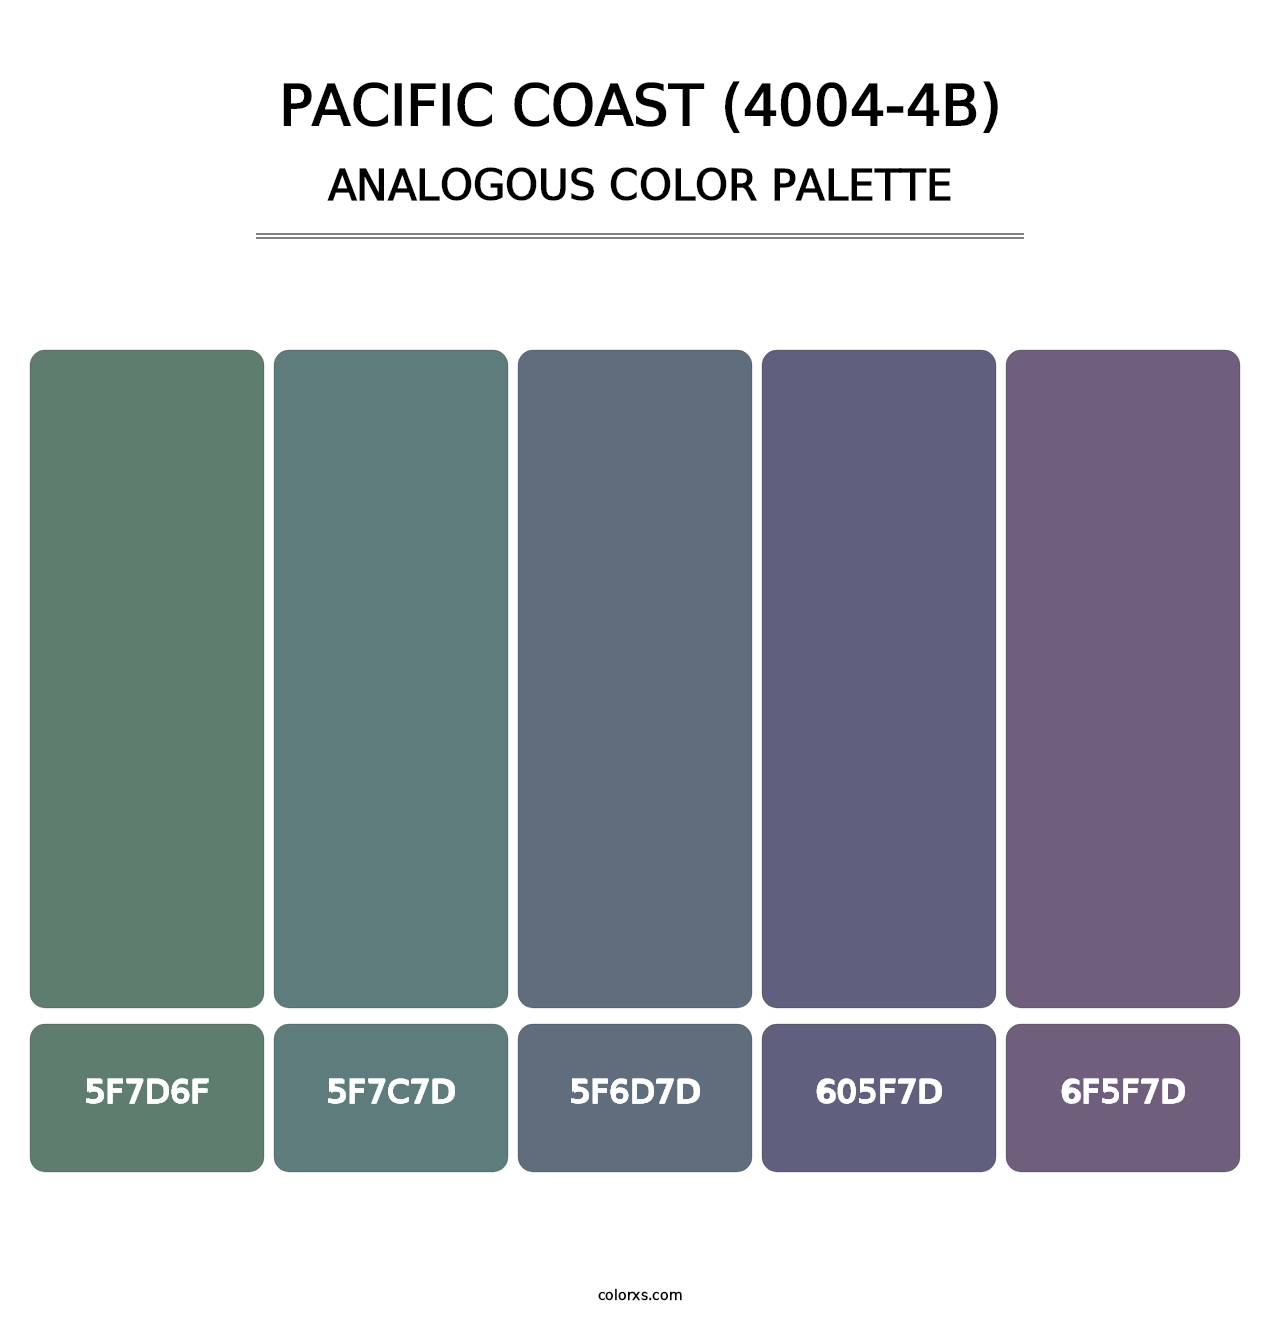 Pacific Coast (4004-4B) - Analogous Color Palette